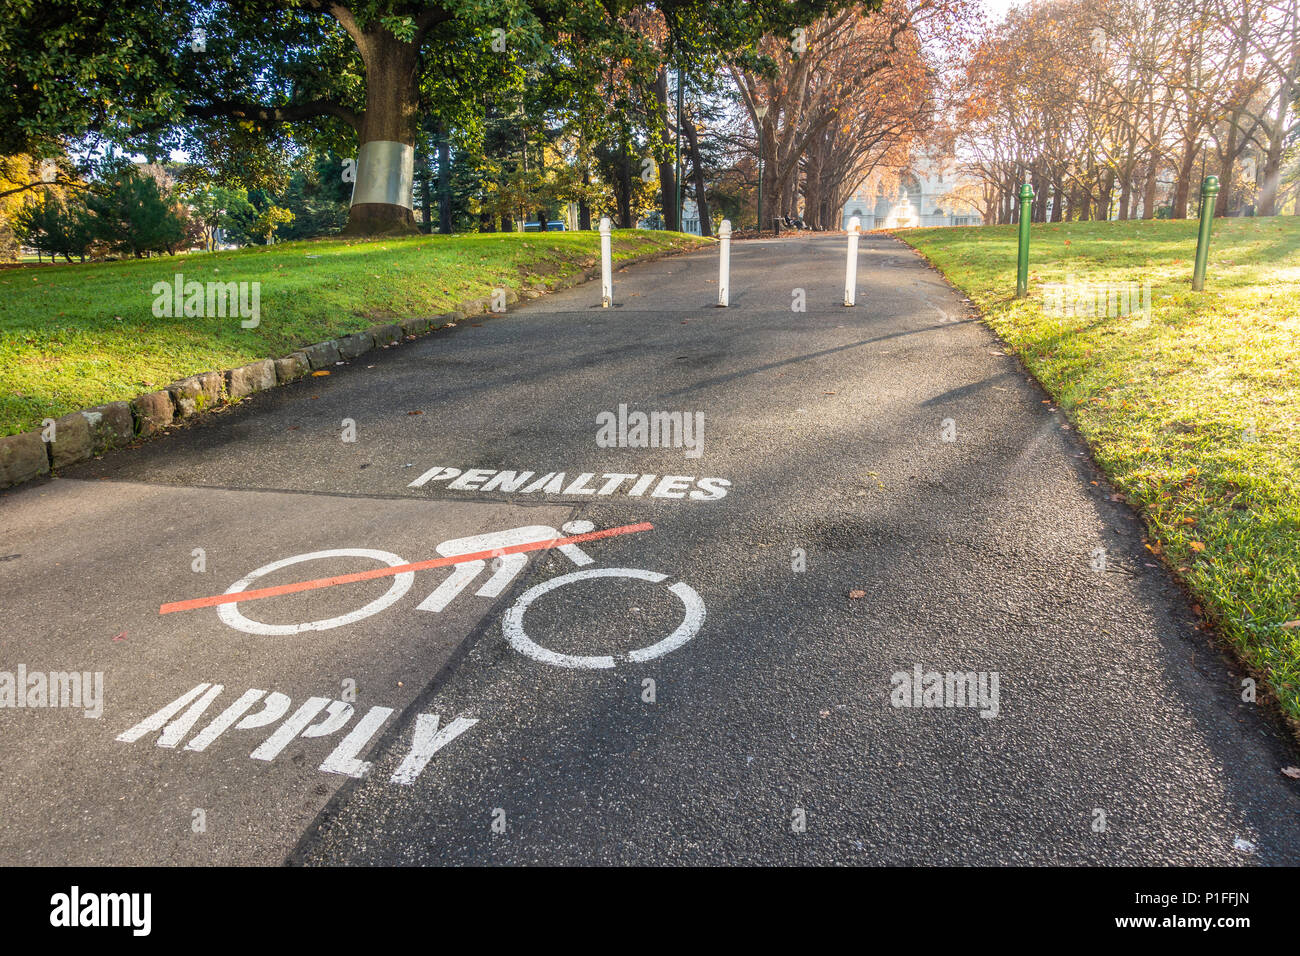 "Sanktionen" Warnschild Malerei auf dem Asphalt Fußweg Radfahrer zu erinnern, in der öffentliche Garten zu demontieren. Melbourne, VIC, Australien Stockfoto